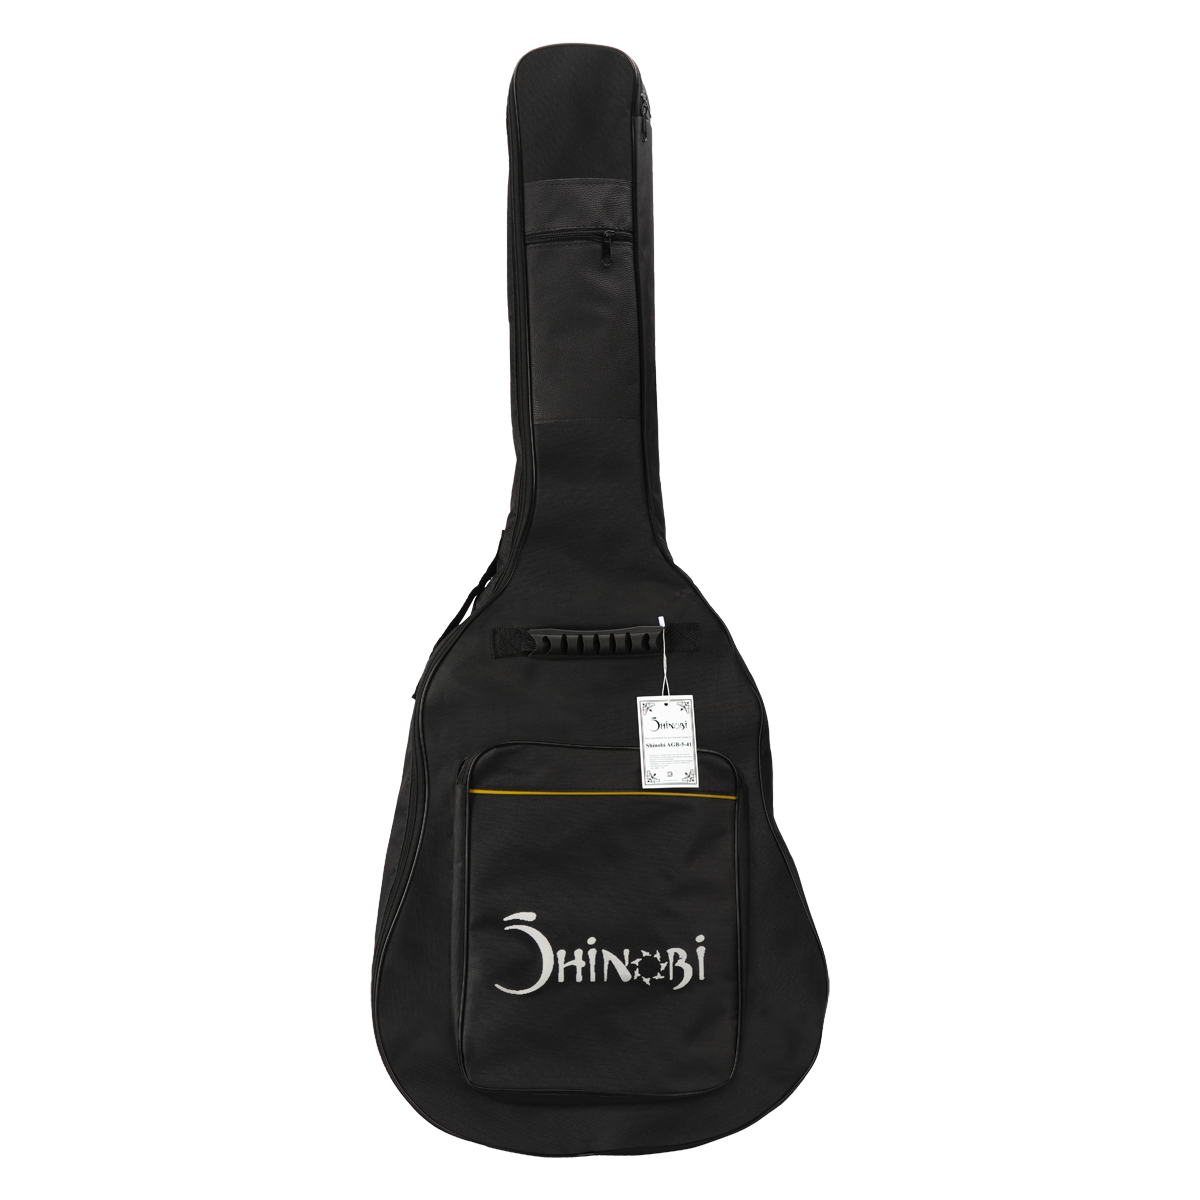 Shinobi AGB-5-41  Чехол для акустической гитары 41'' с утеплителем 5мм